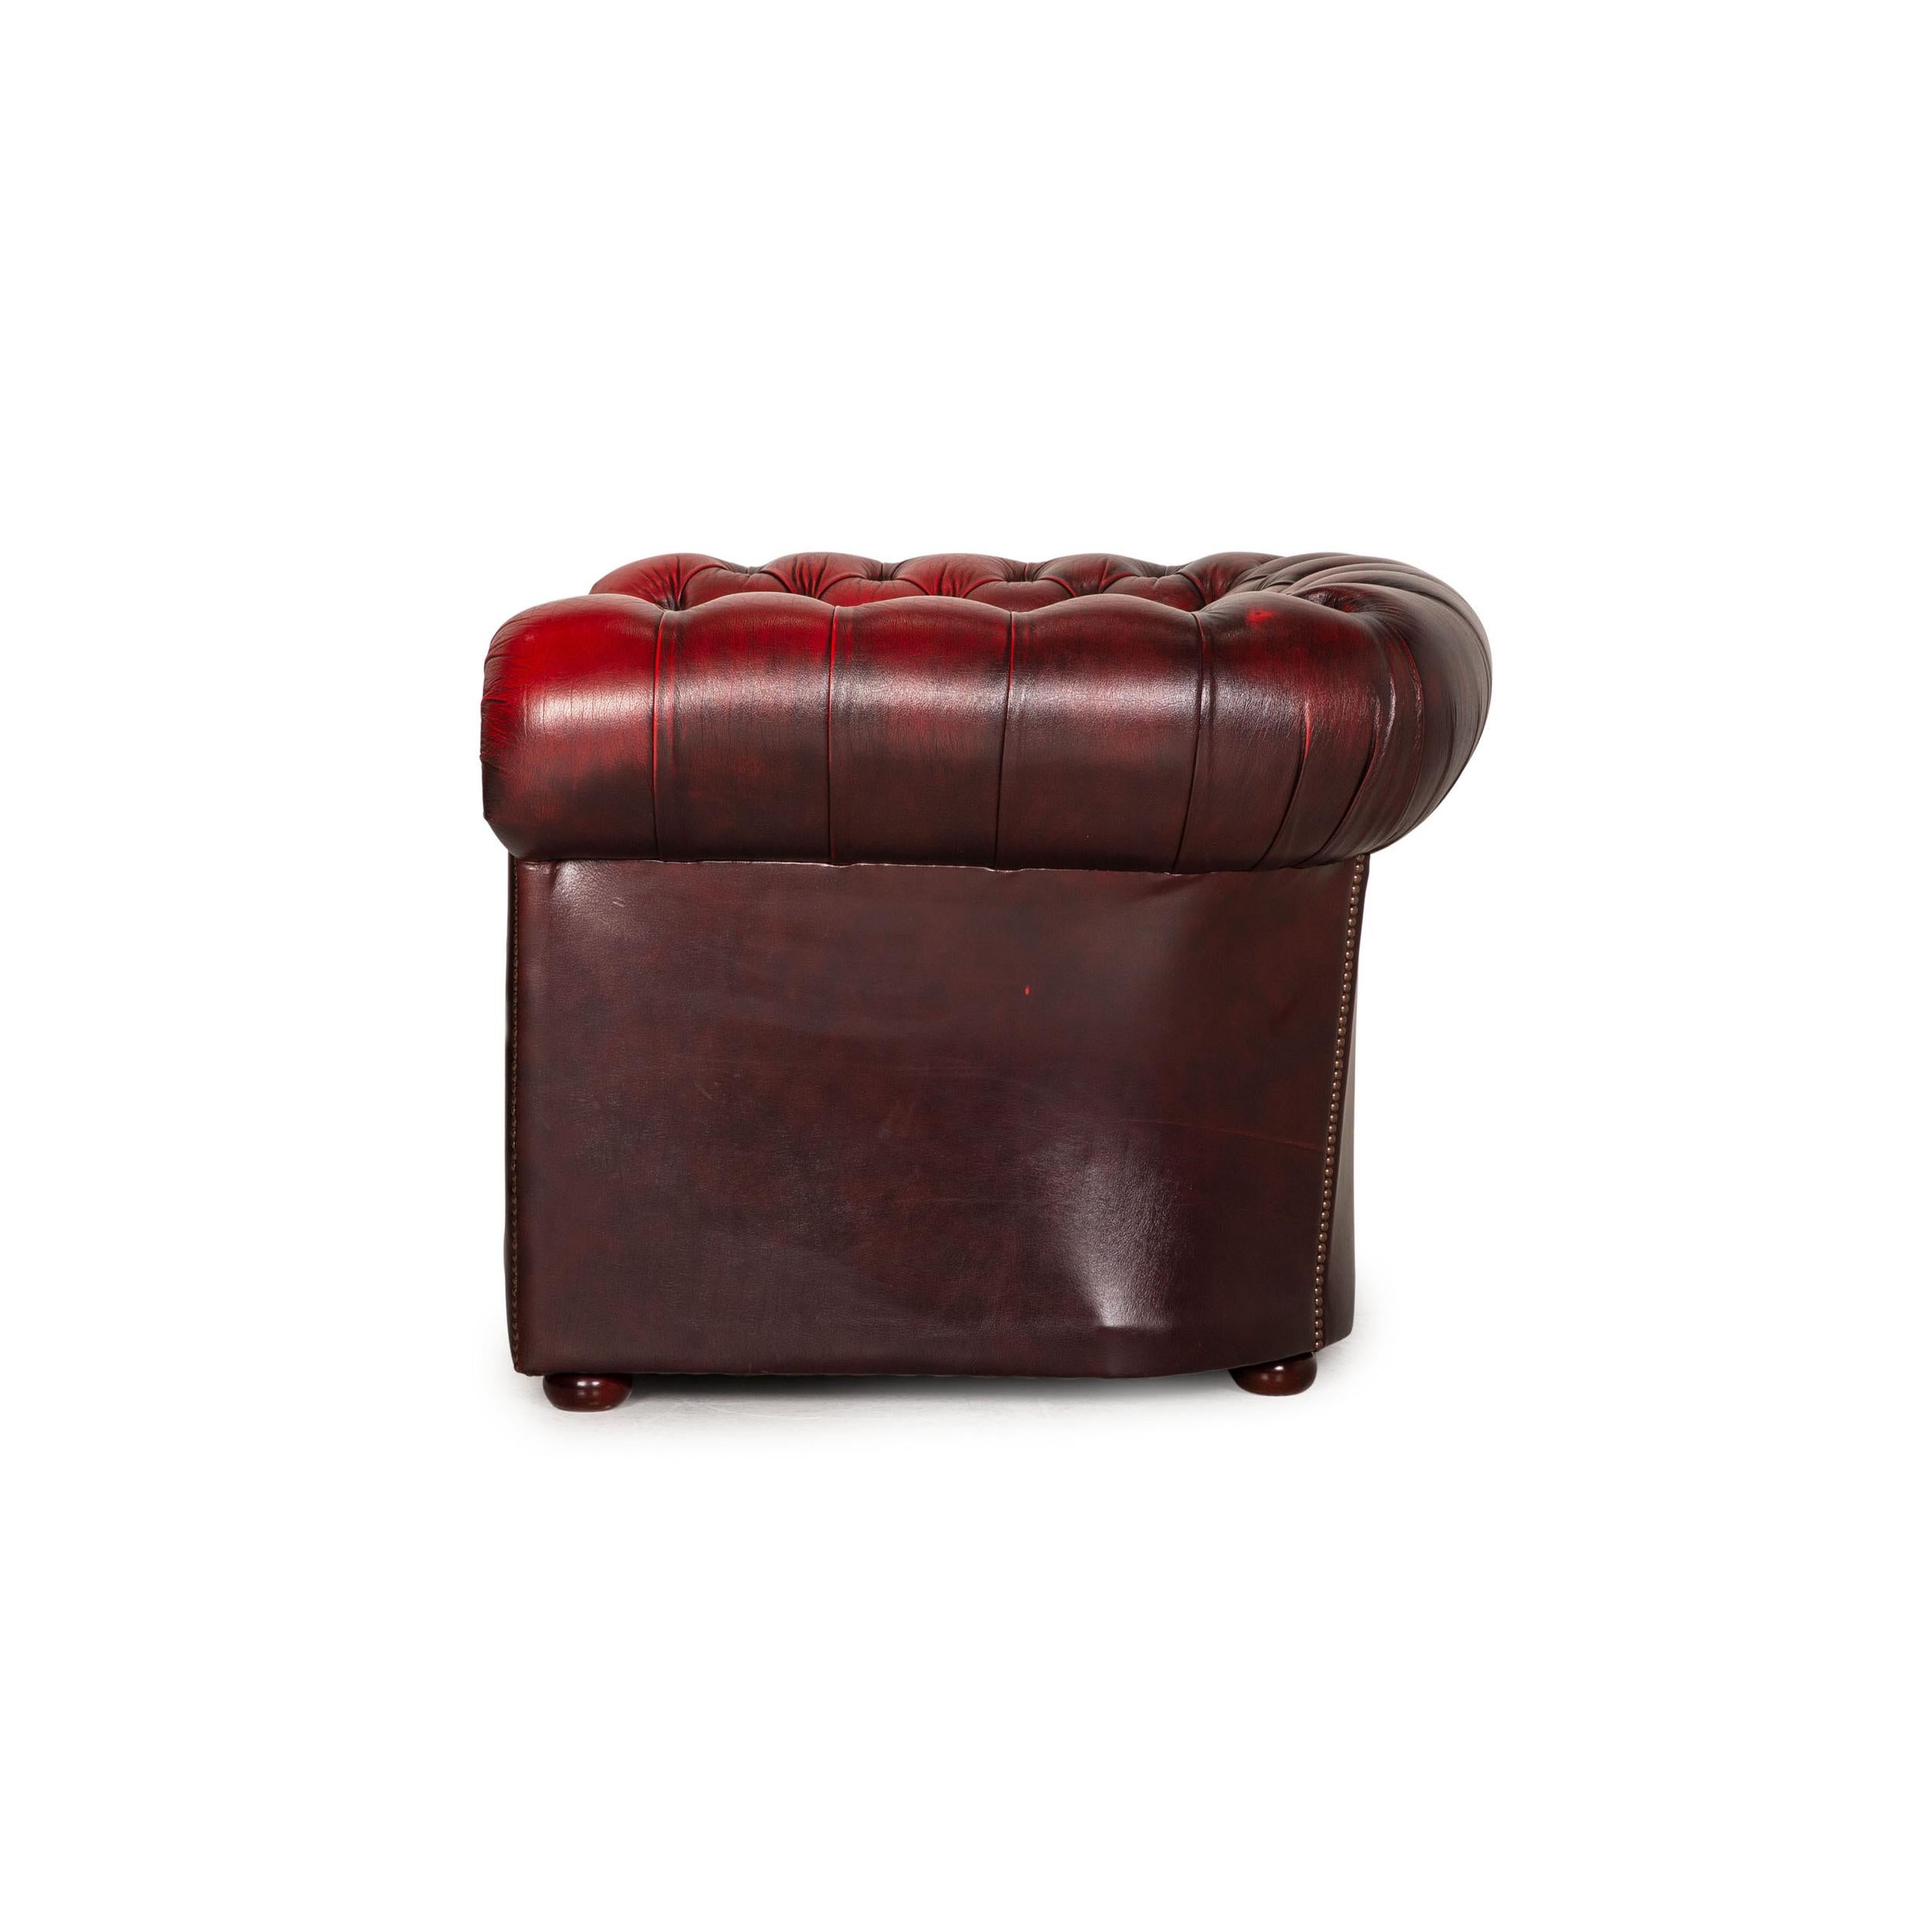 Chesterfield Tudor Leather Armchair Dark Red 4